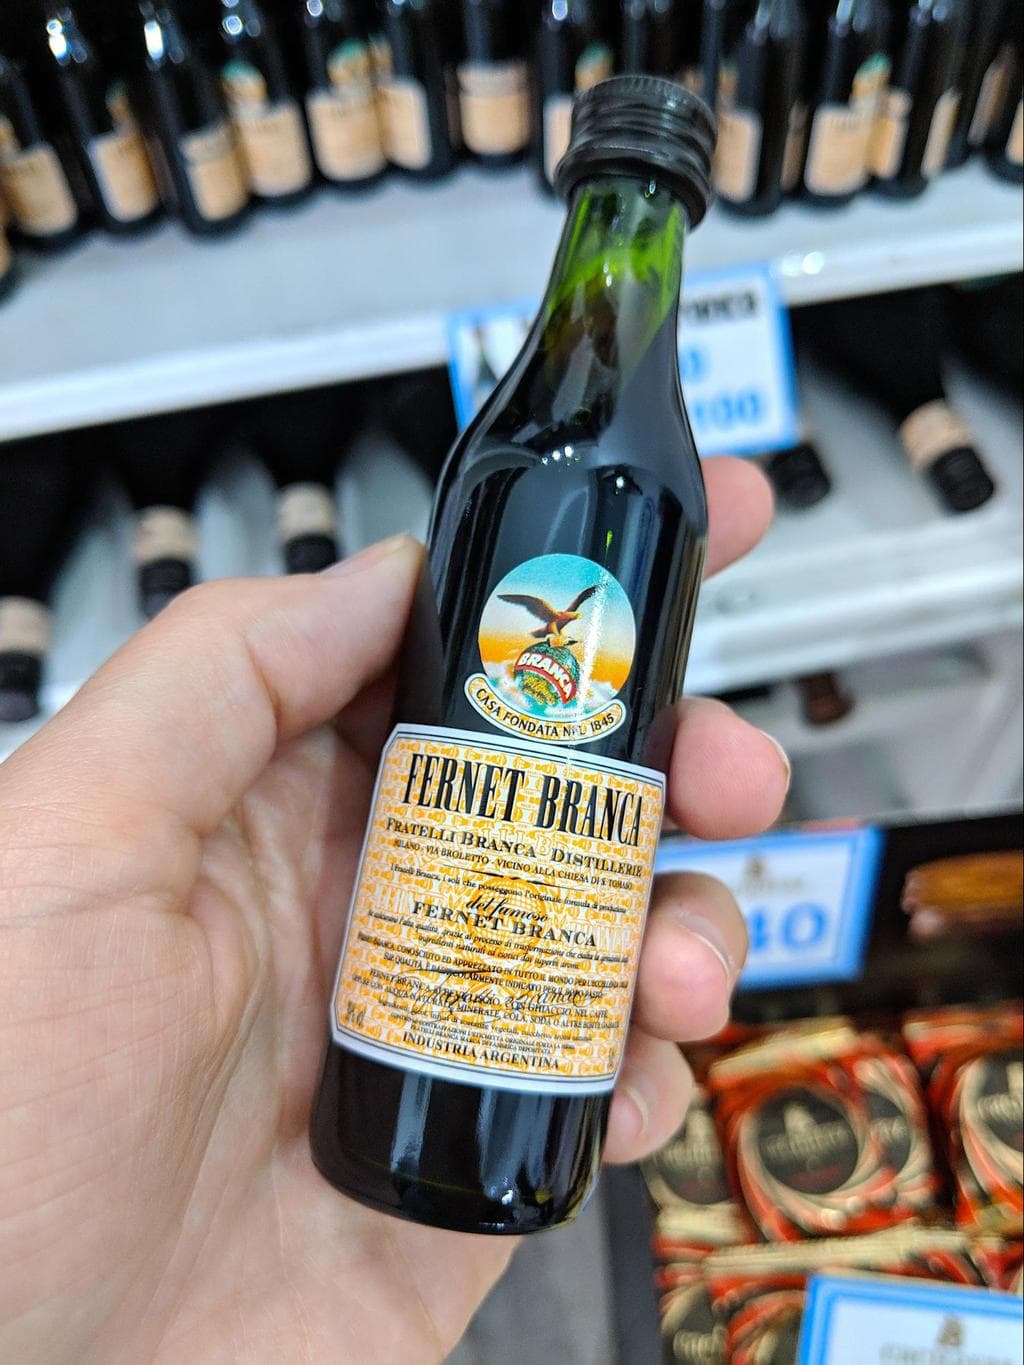 A small bottle of Fernet Branca